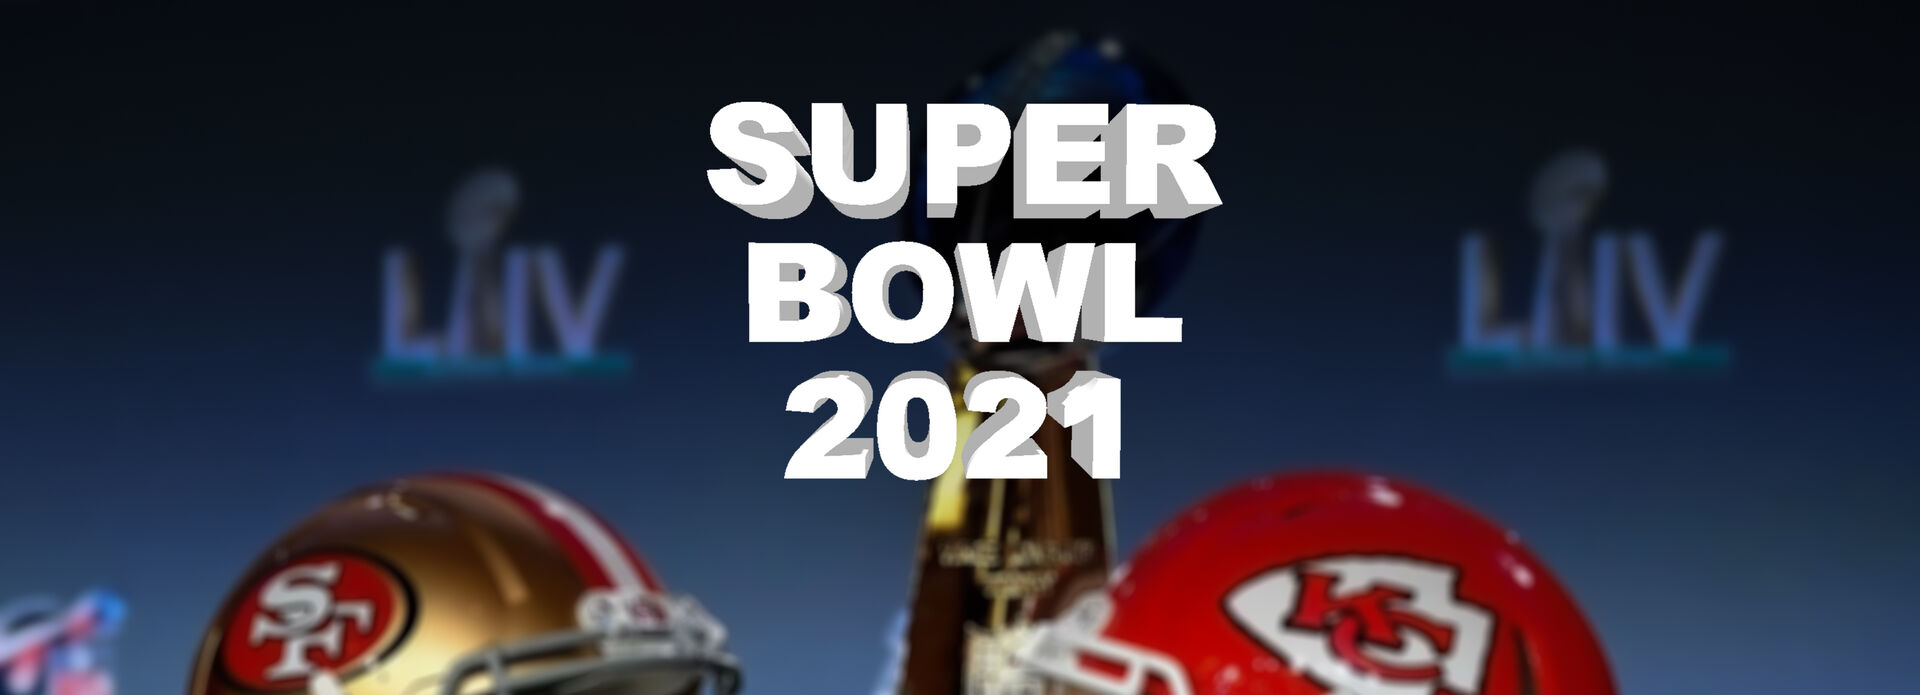 Super Bowl 2021